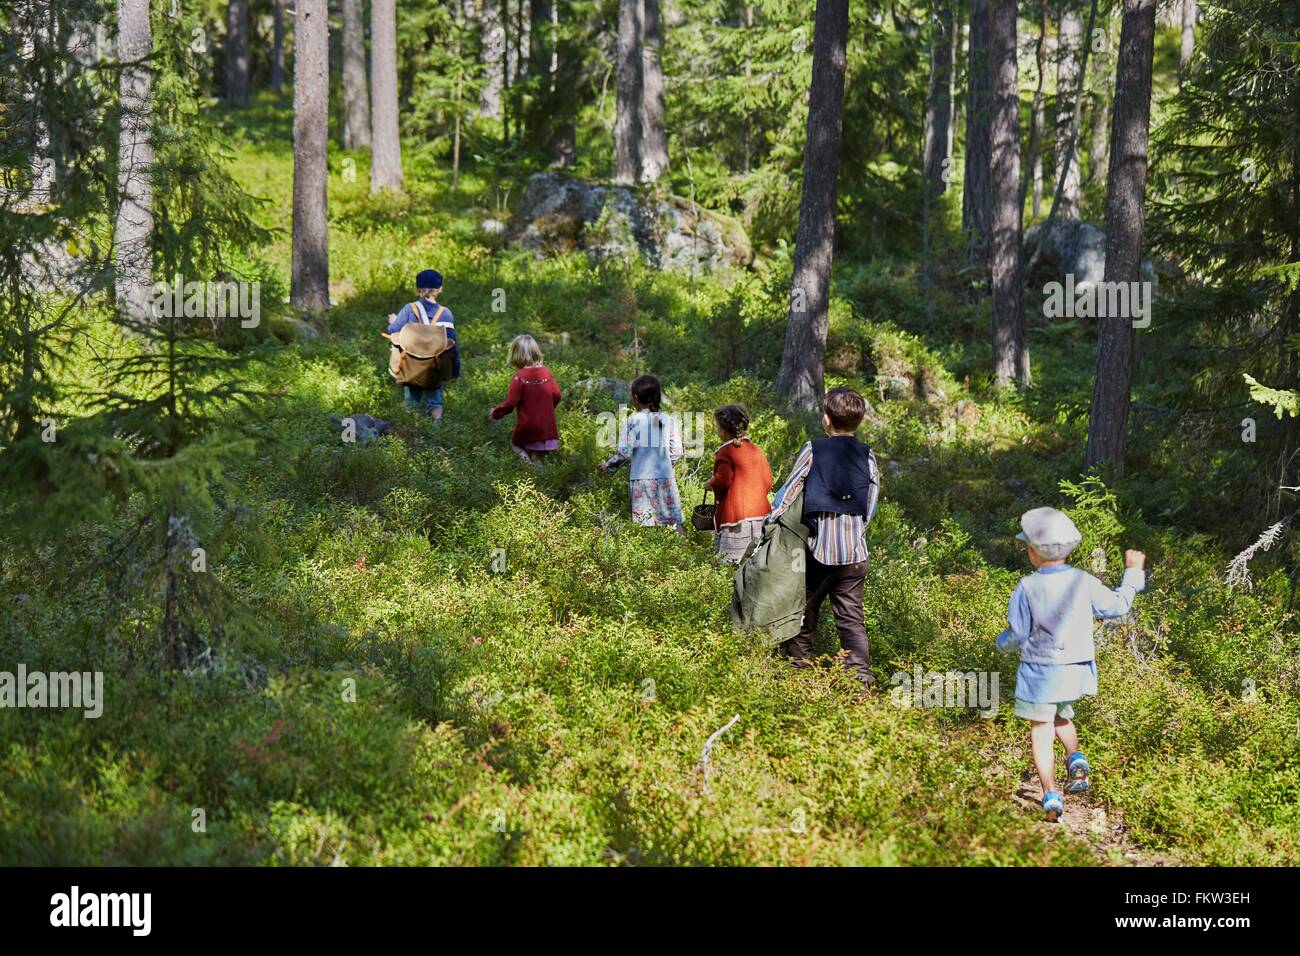 Six garçons et filles vêtus de vêtements rétro balade en forêt Banque D'Images